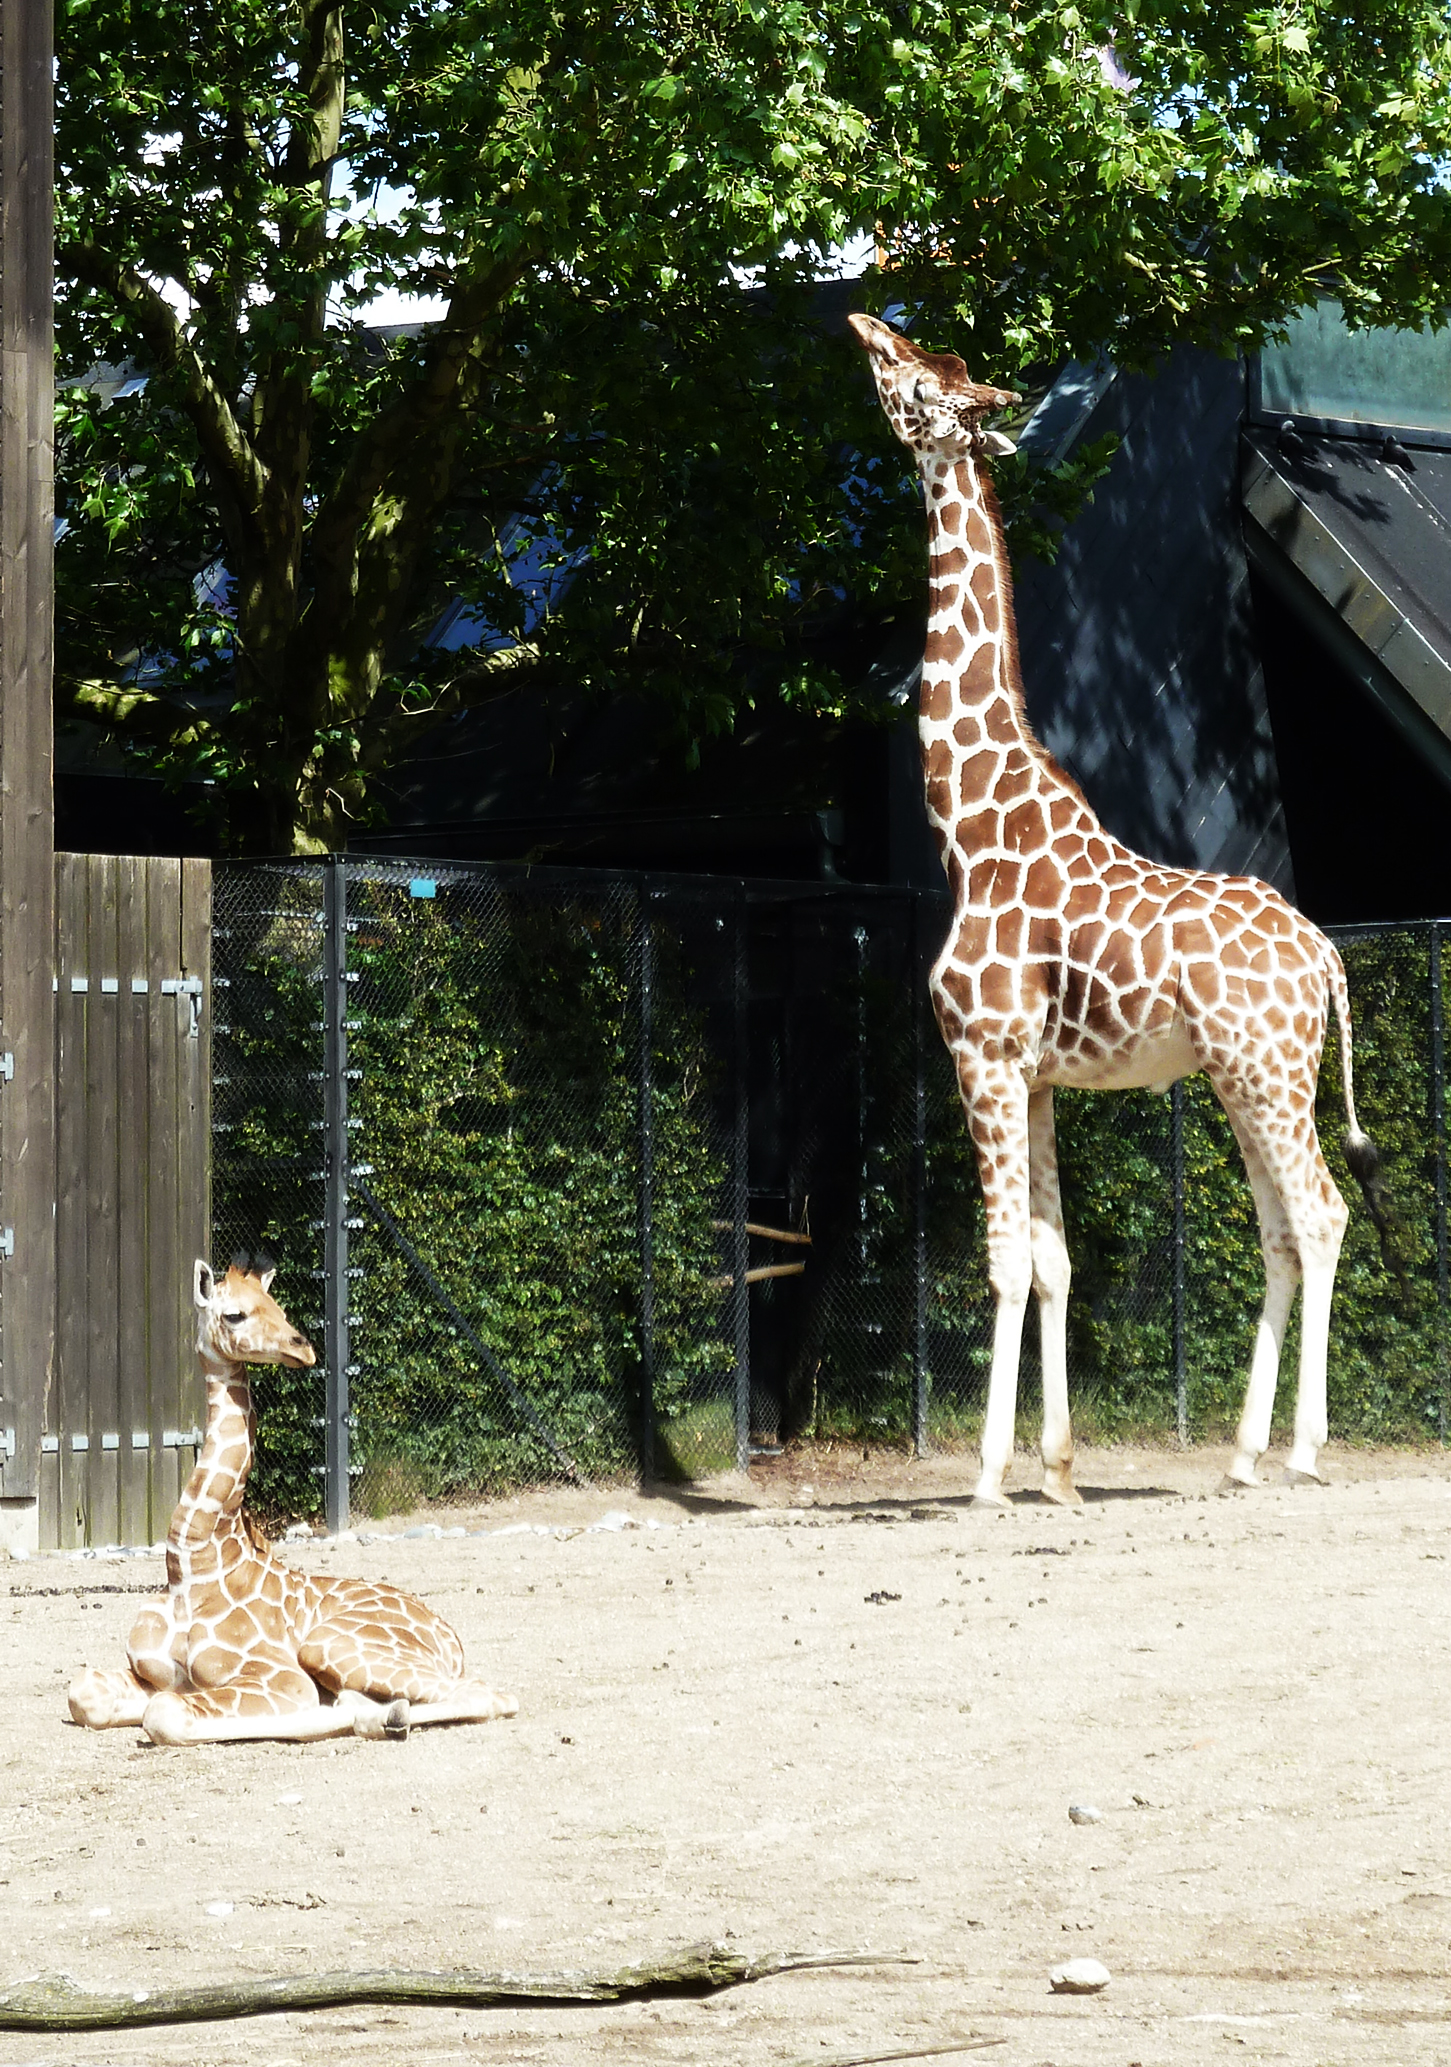 young giraffe in zoo laying down